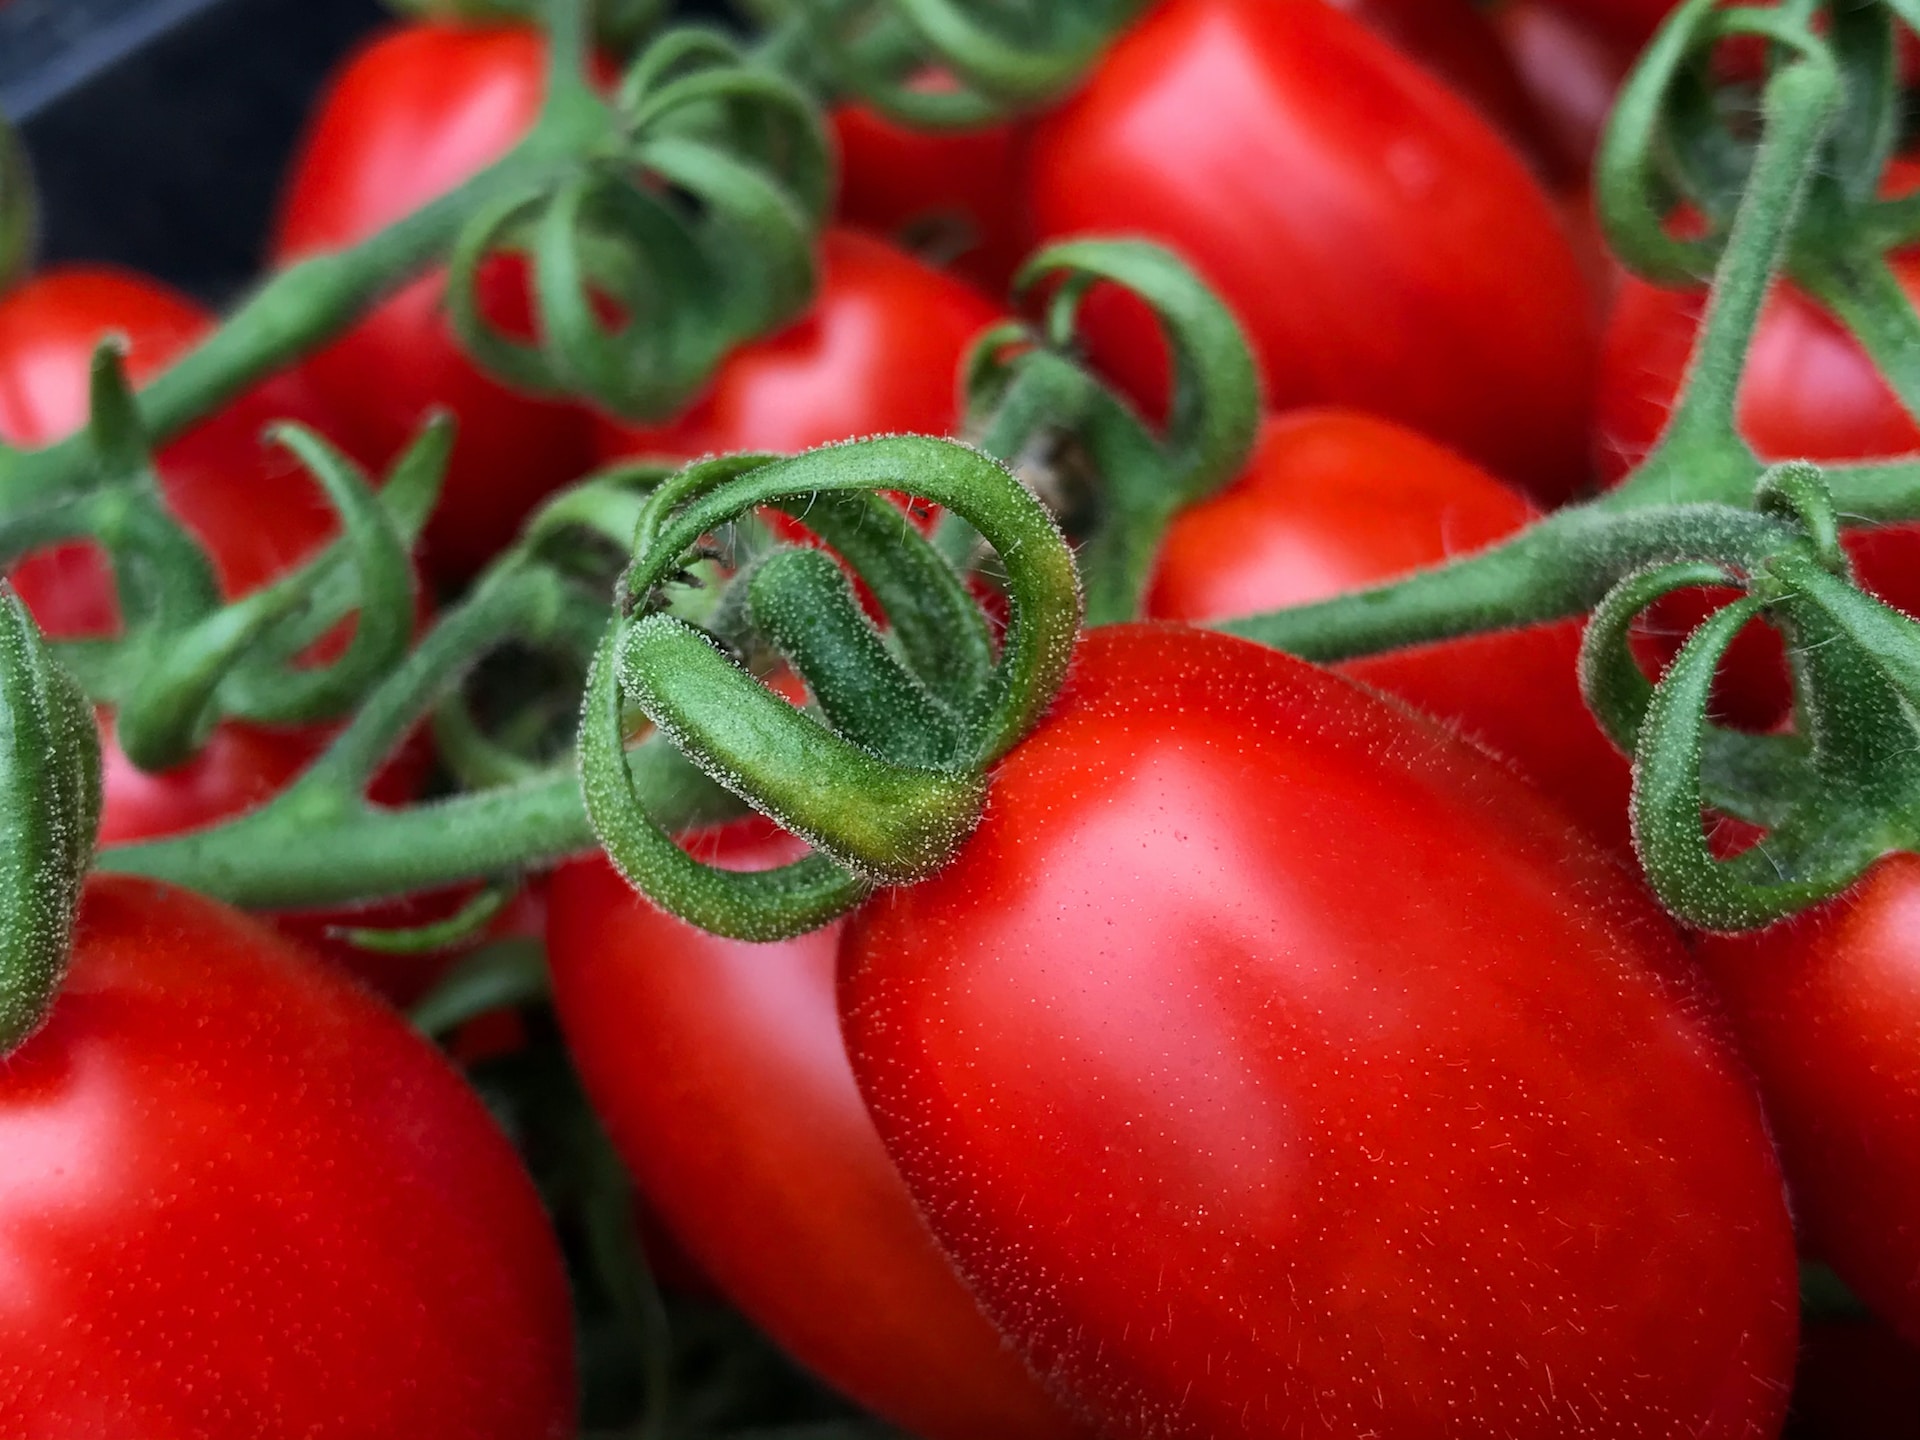 Presidi Projekt von Slow Food, will auch Pachochino Tomaten erhalten. Foto von Marco Vella auf Unsplash